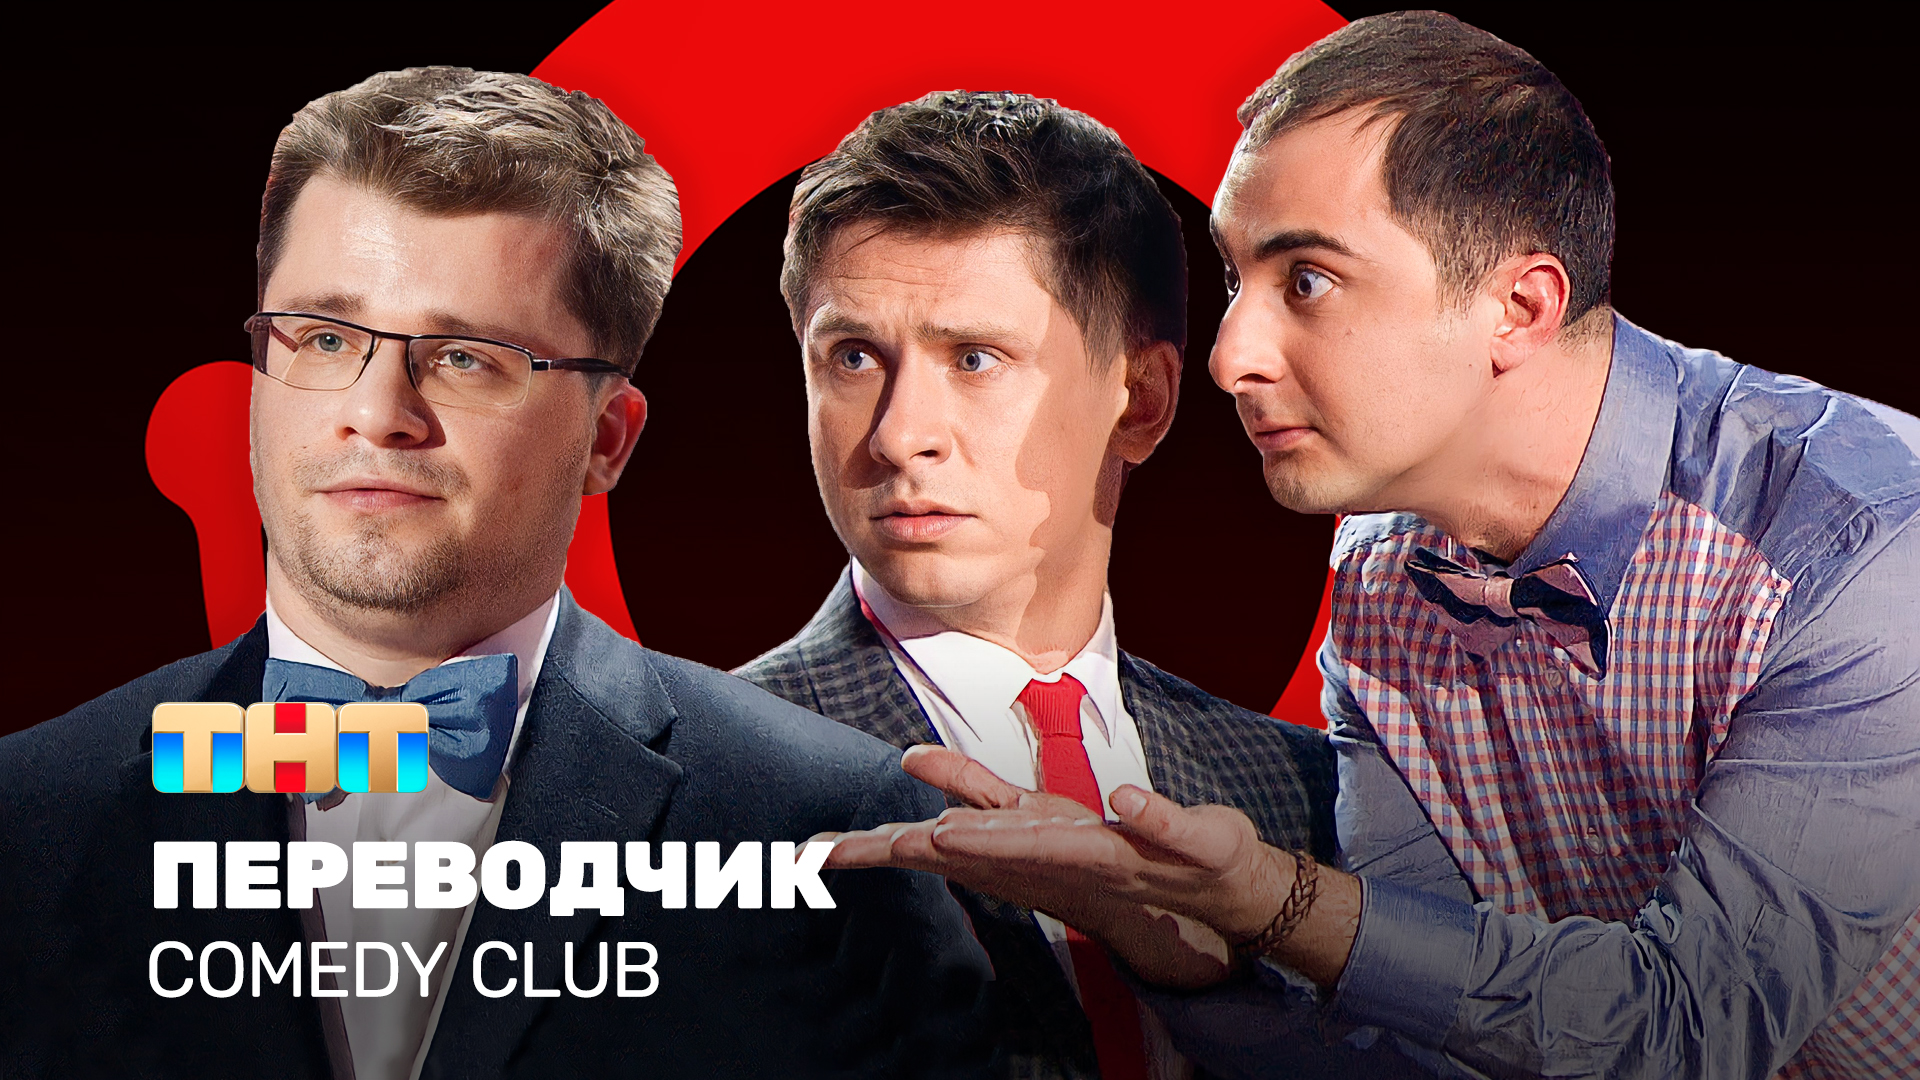 Comedy Club: Переводчик | Демис Карибидис, Тимур Батрутдинов, Гарик Харламов